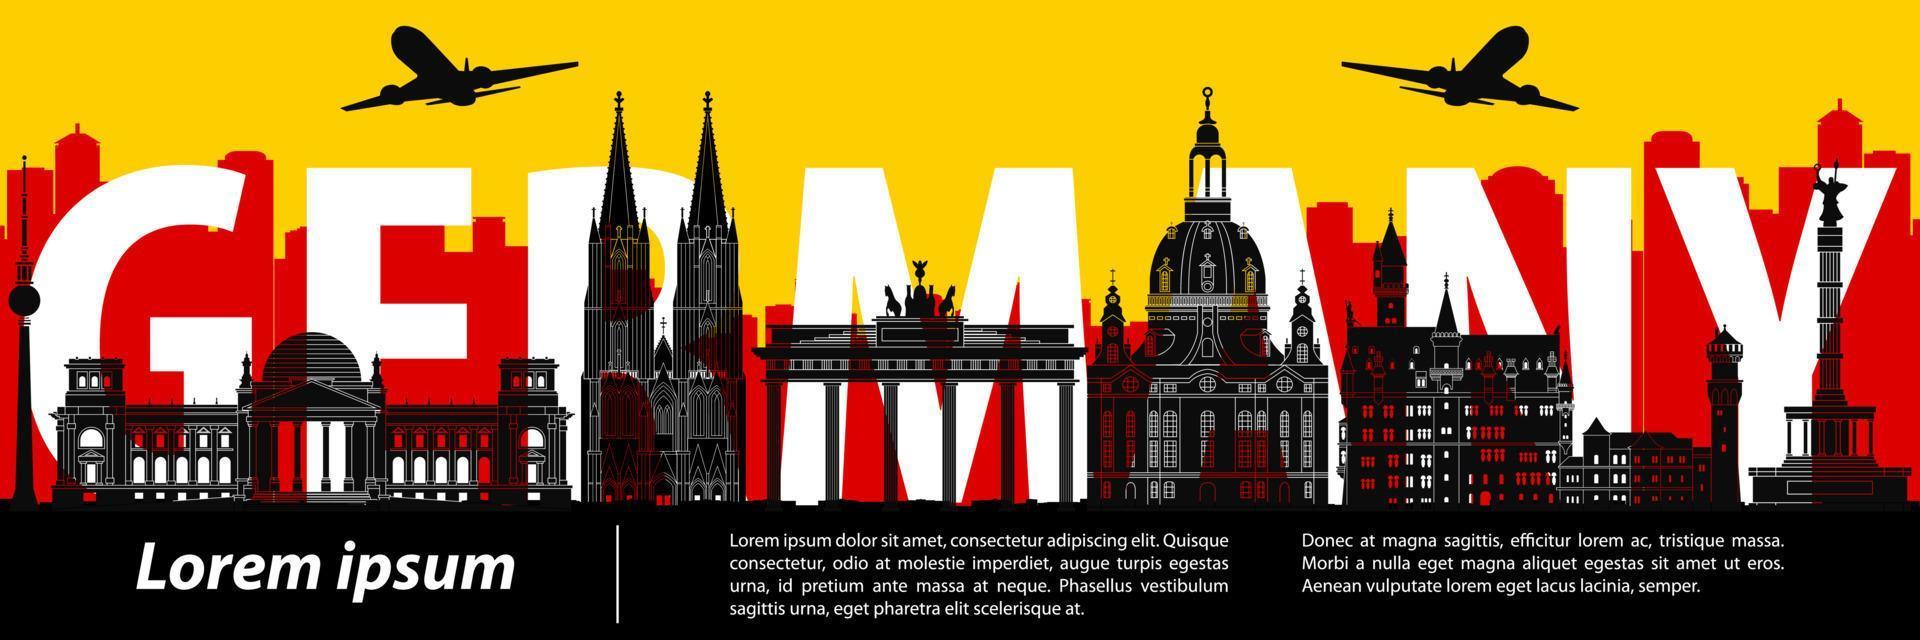 silueta famosa de alemania con diseño de color rojo y amarillo vector